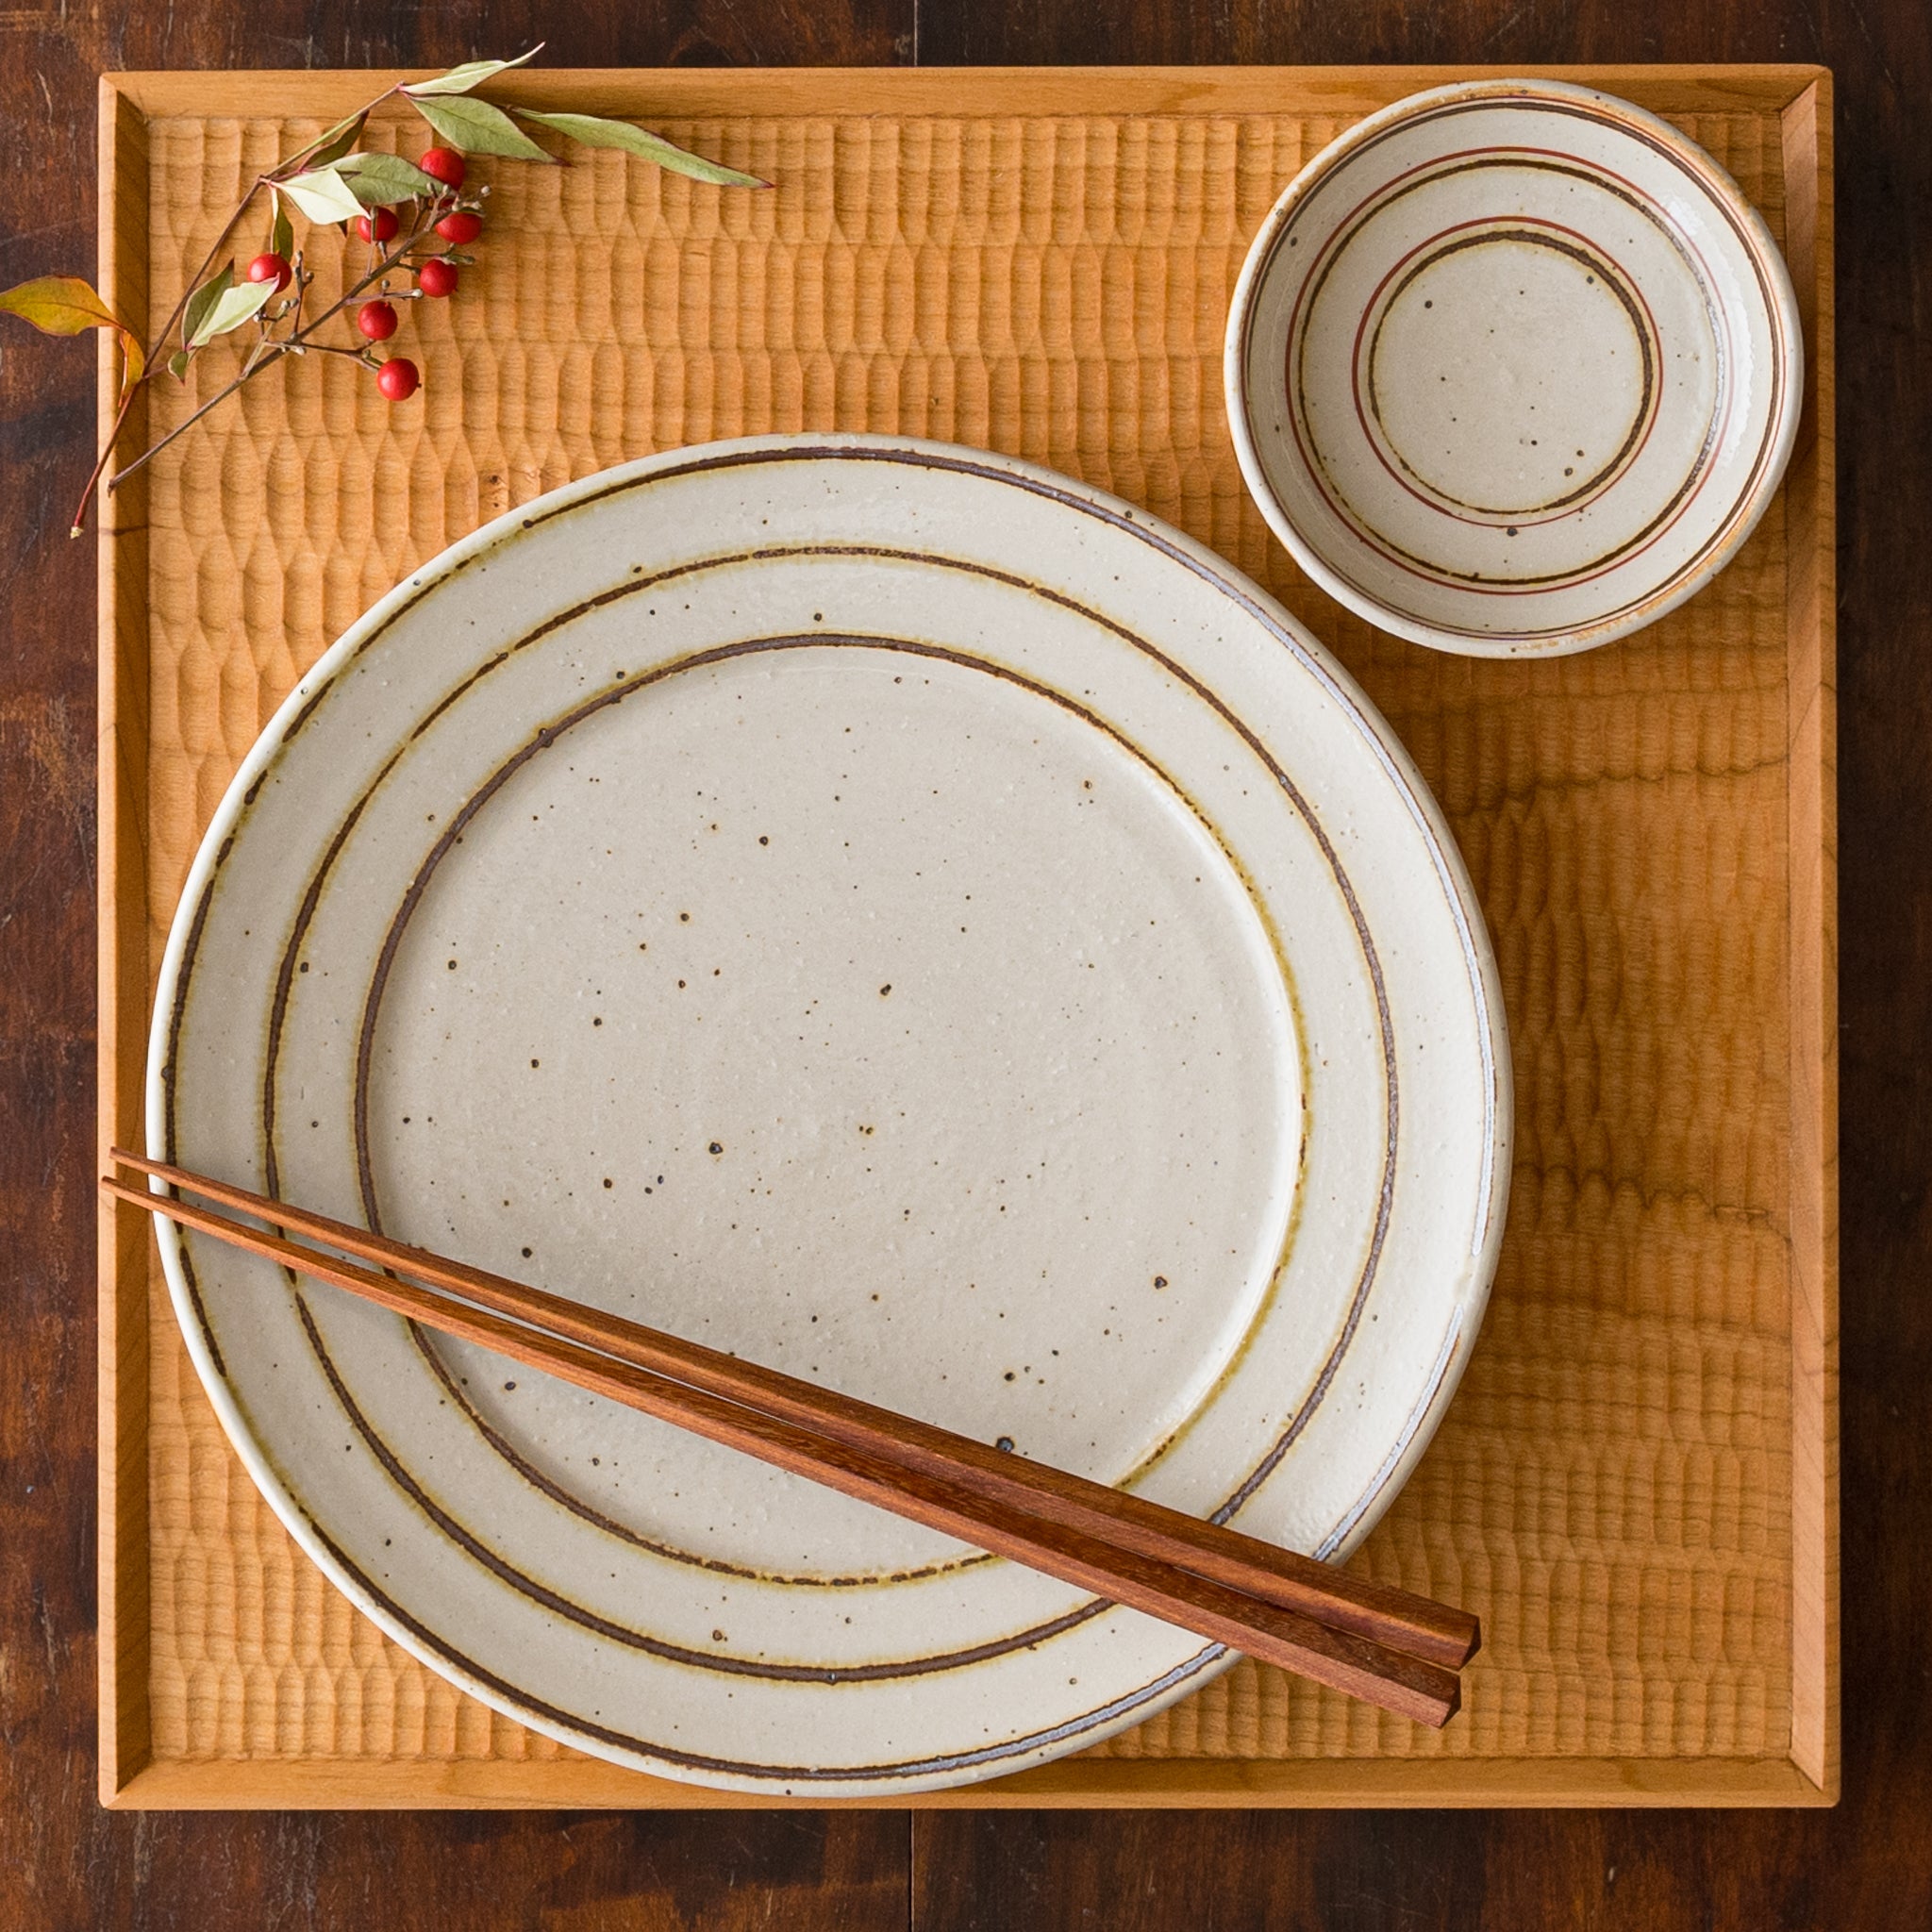 盛り付けたお料理が素敵に引き立つ冨本大輔さんの灰釉鉄絵7寸皿